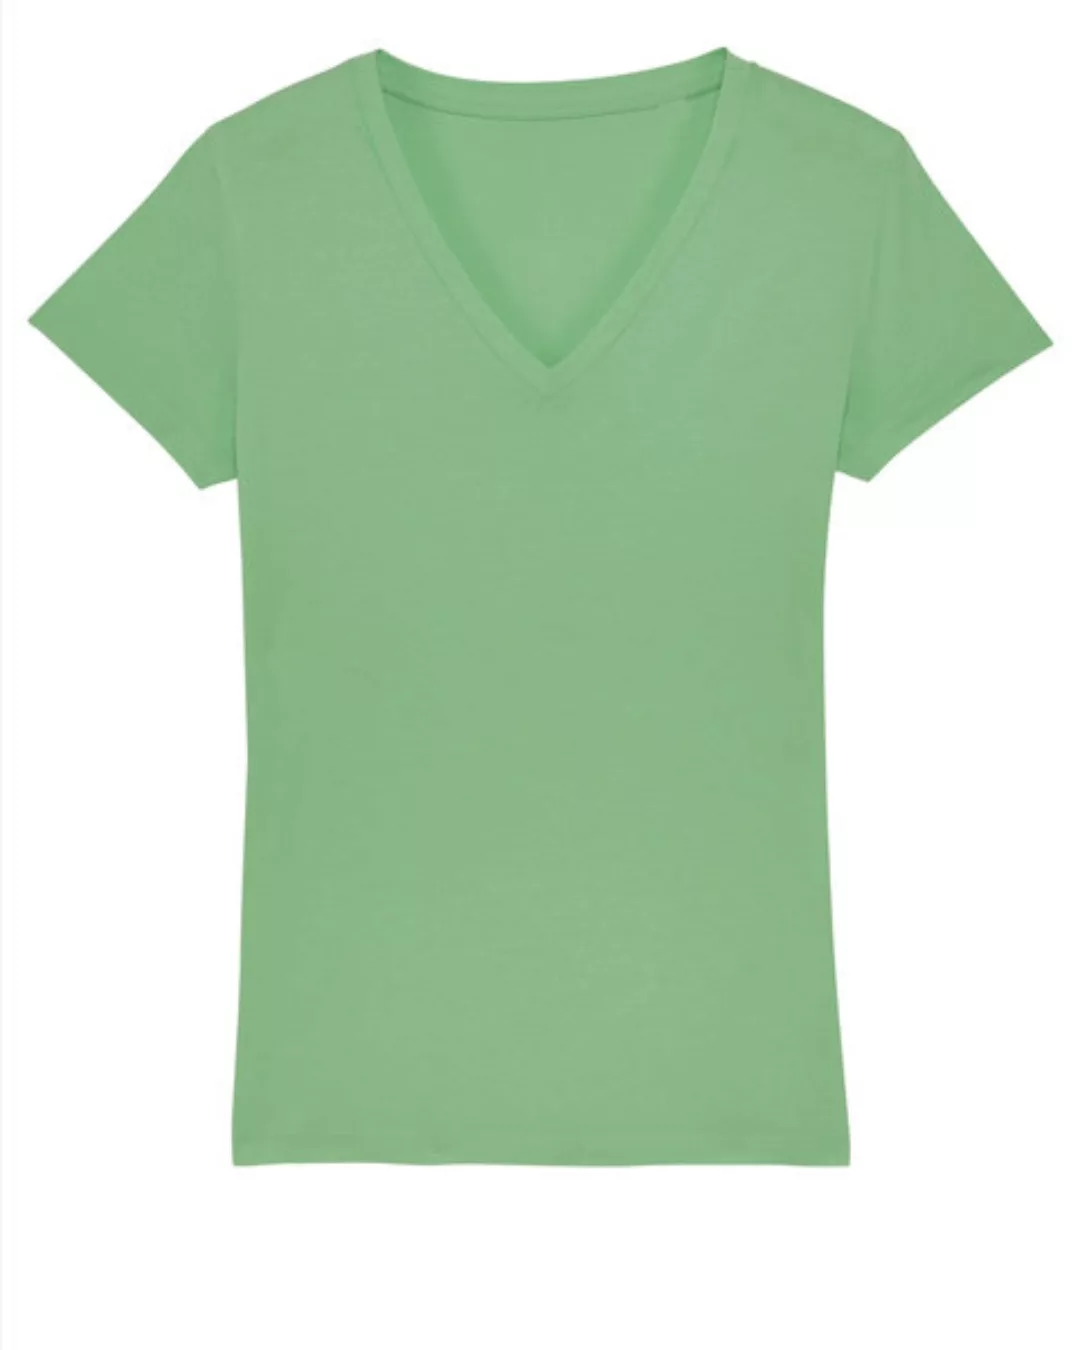 Damen T-shirt Mit V-ausschnitt "Evolution - Stand Against" In 4 Farben günstig online kaufen